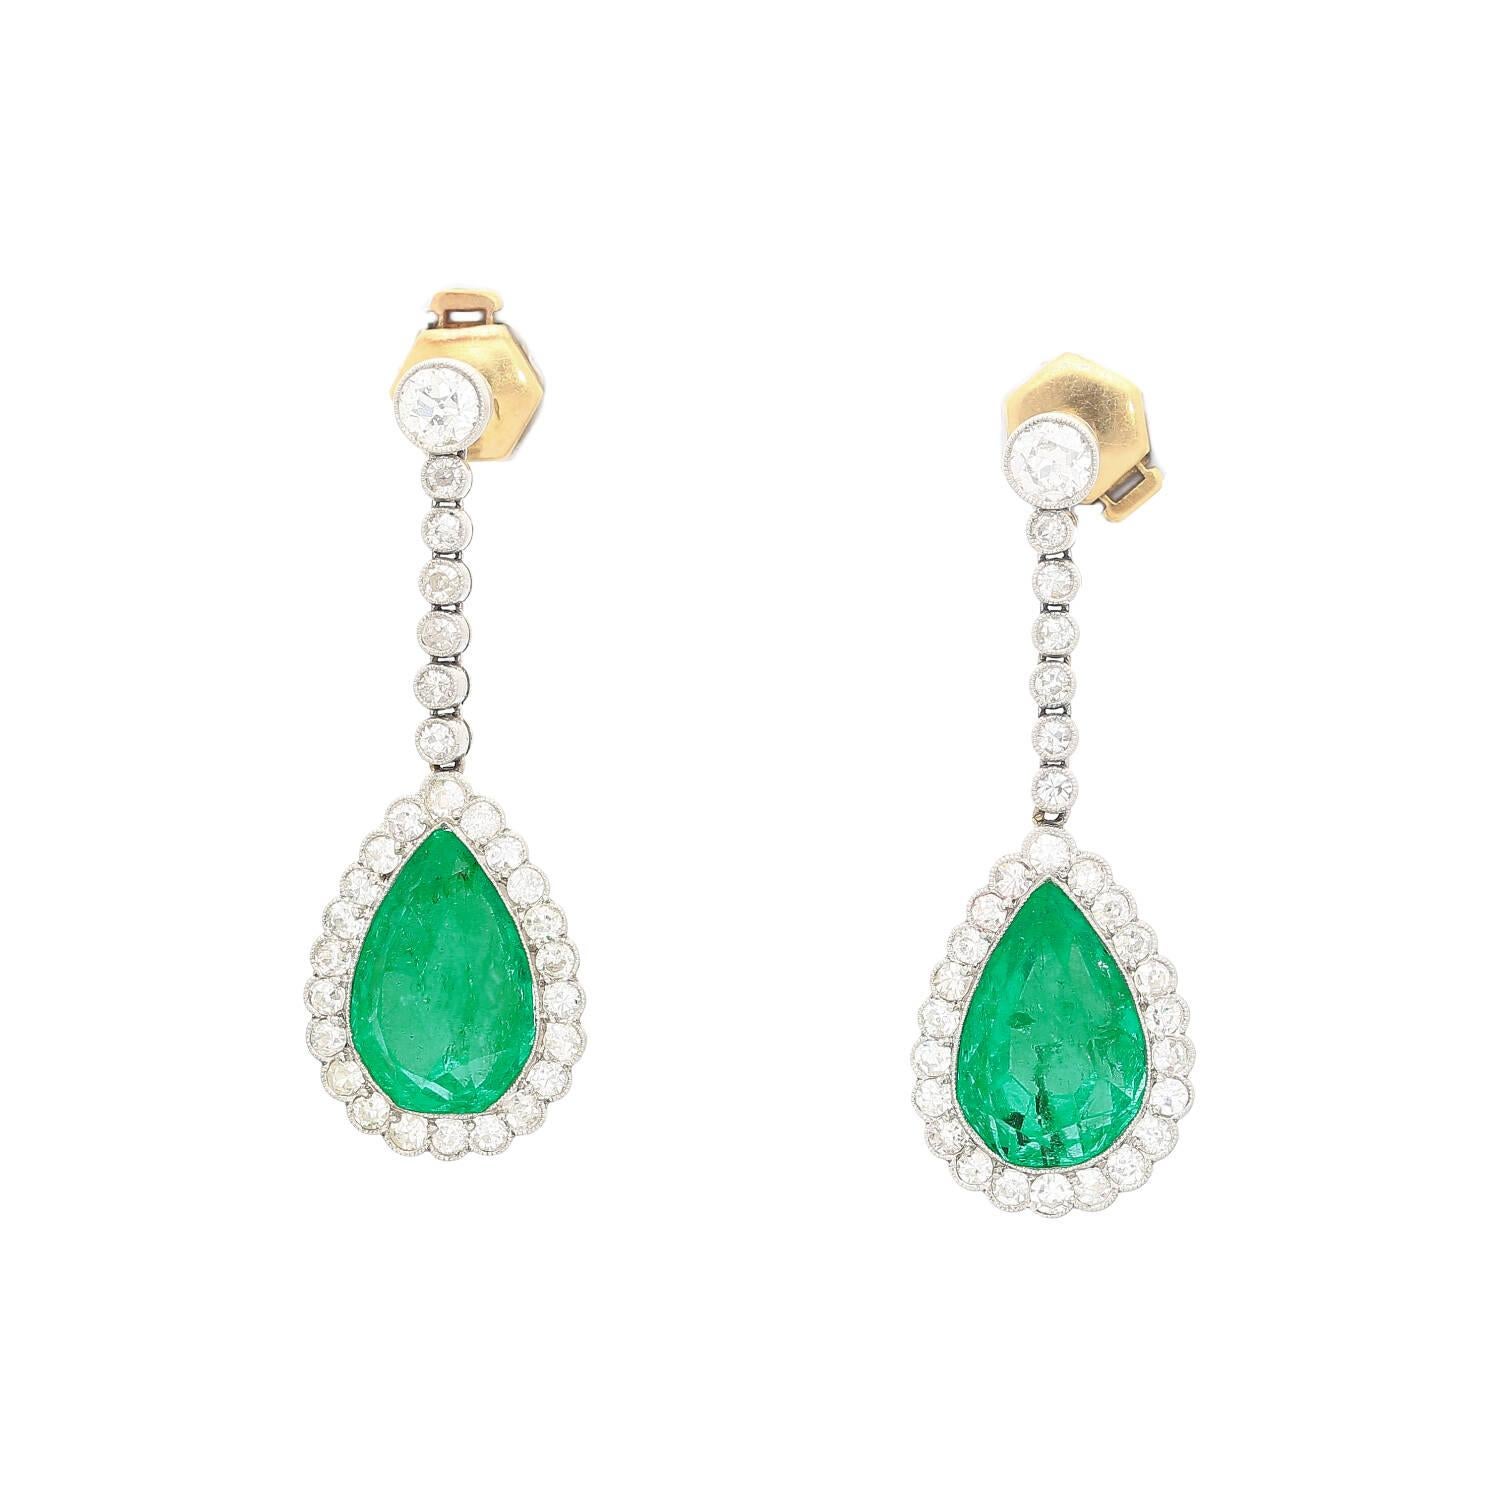 Natürliche Ohrringe mit 10 Karat kolumbianischem Smaragd im Birnenschliff und Diamanten im Rundschliff in einer Fassung aus Platin und Gold. Die AGL hat das Mittelsteinpaar als natürliche Smaragde kolumbianischen Ursprungs zertifiziert, die nur